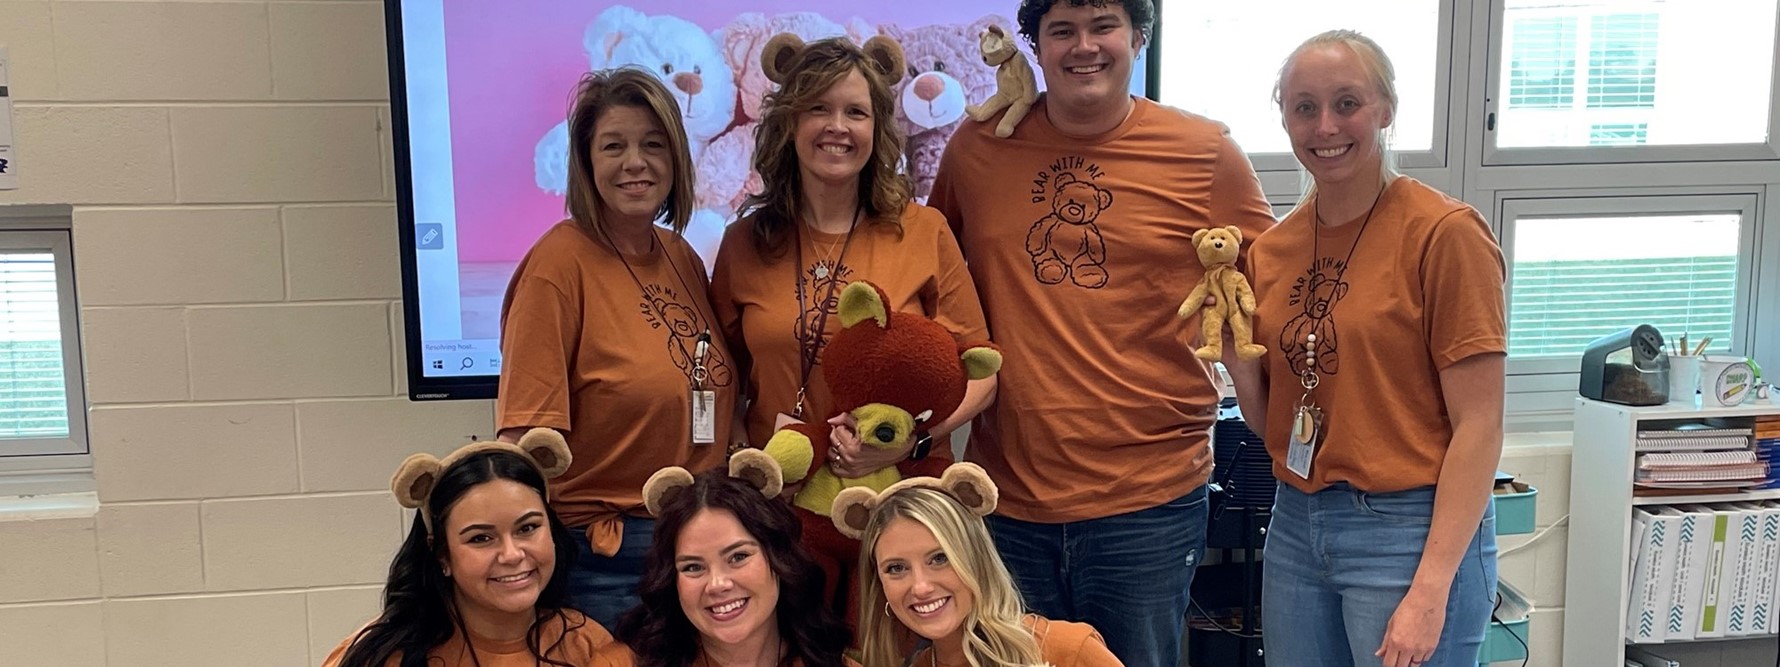 Teachers dressed as teddy bears for national teddy bear day